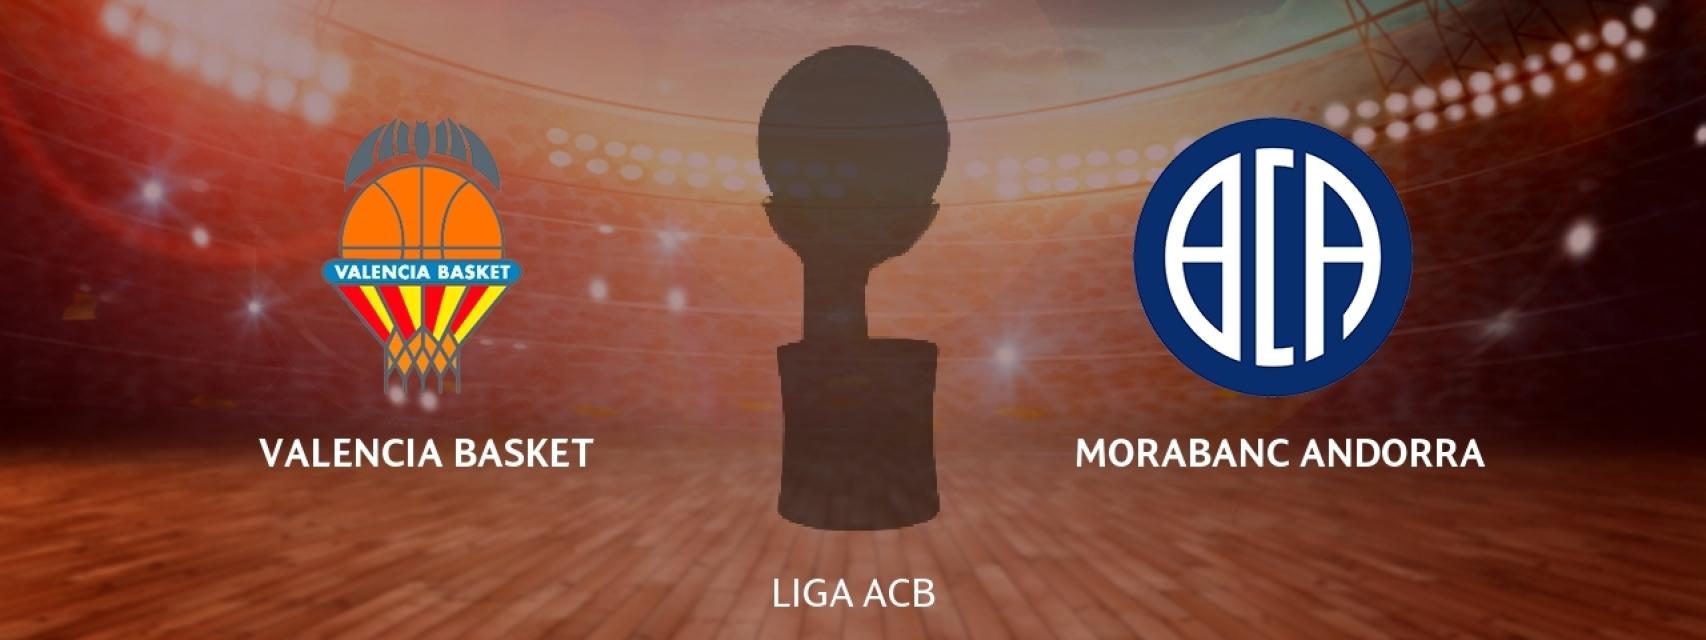 Valencia Basket - MoraBanc Andorra